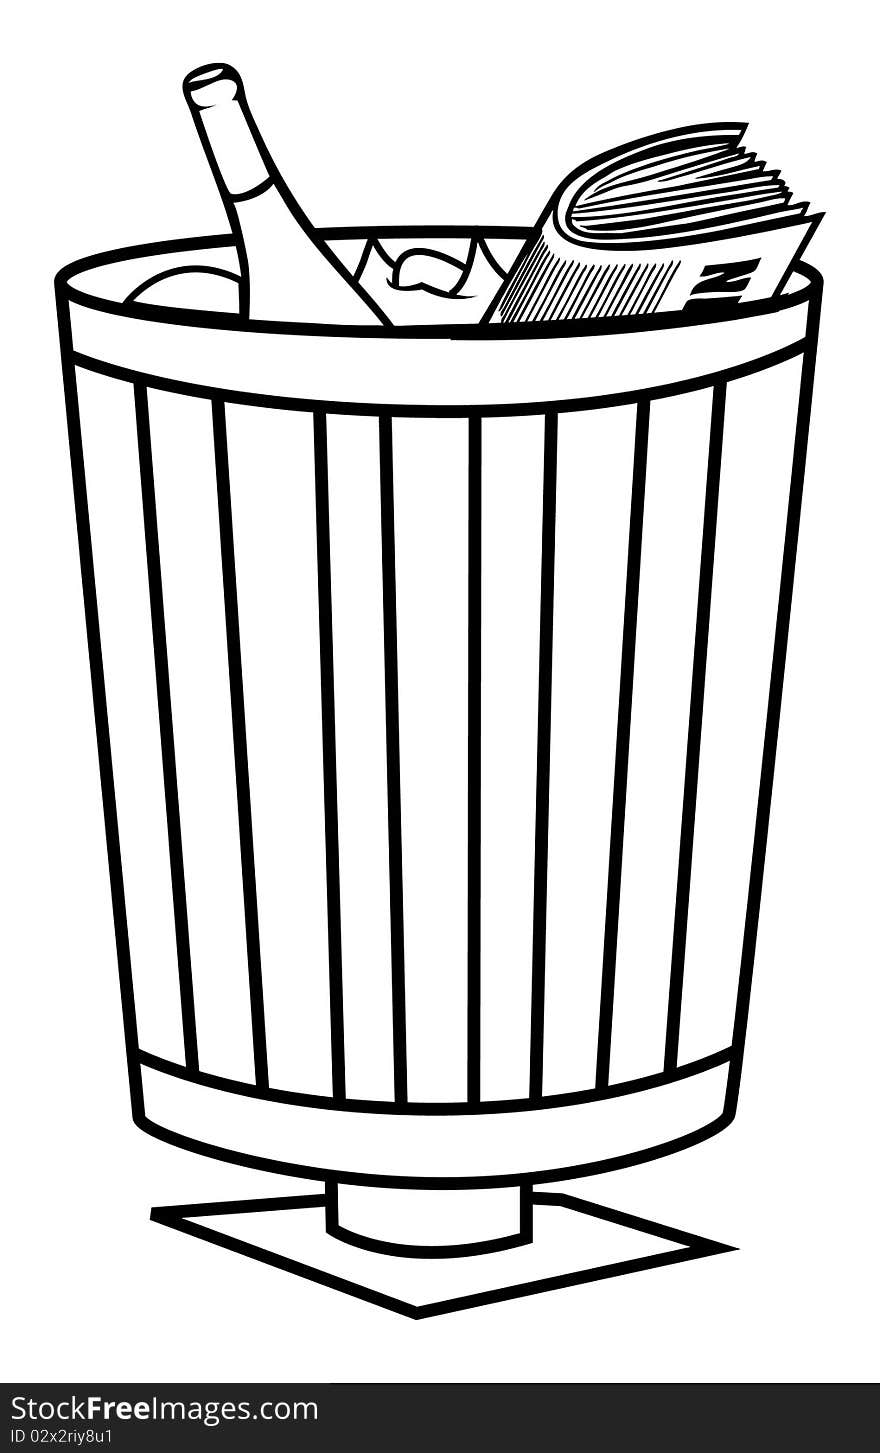 Cartoon outline illustration of a trash bin